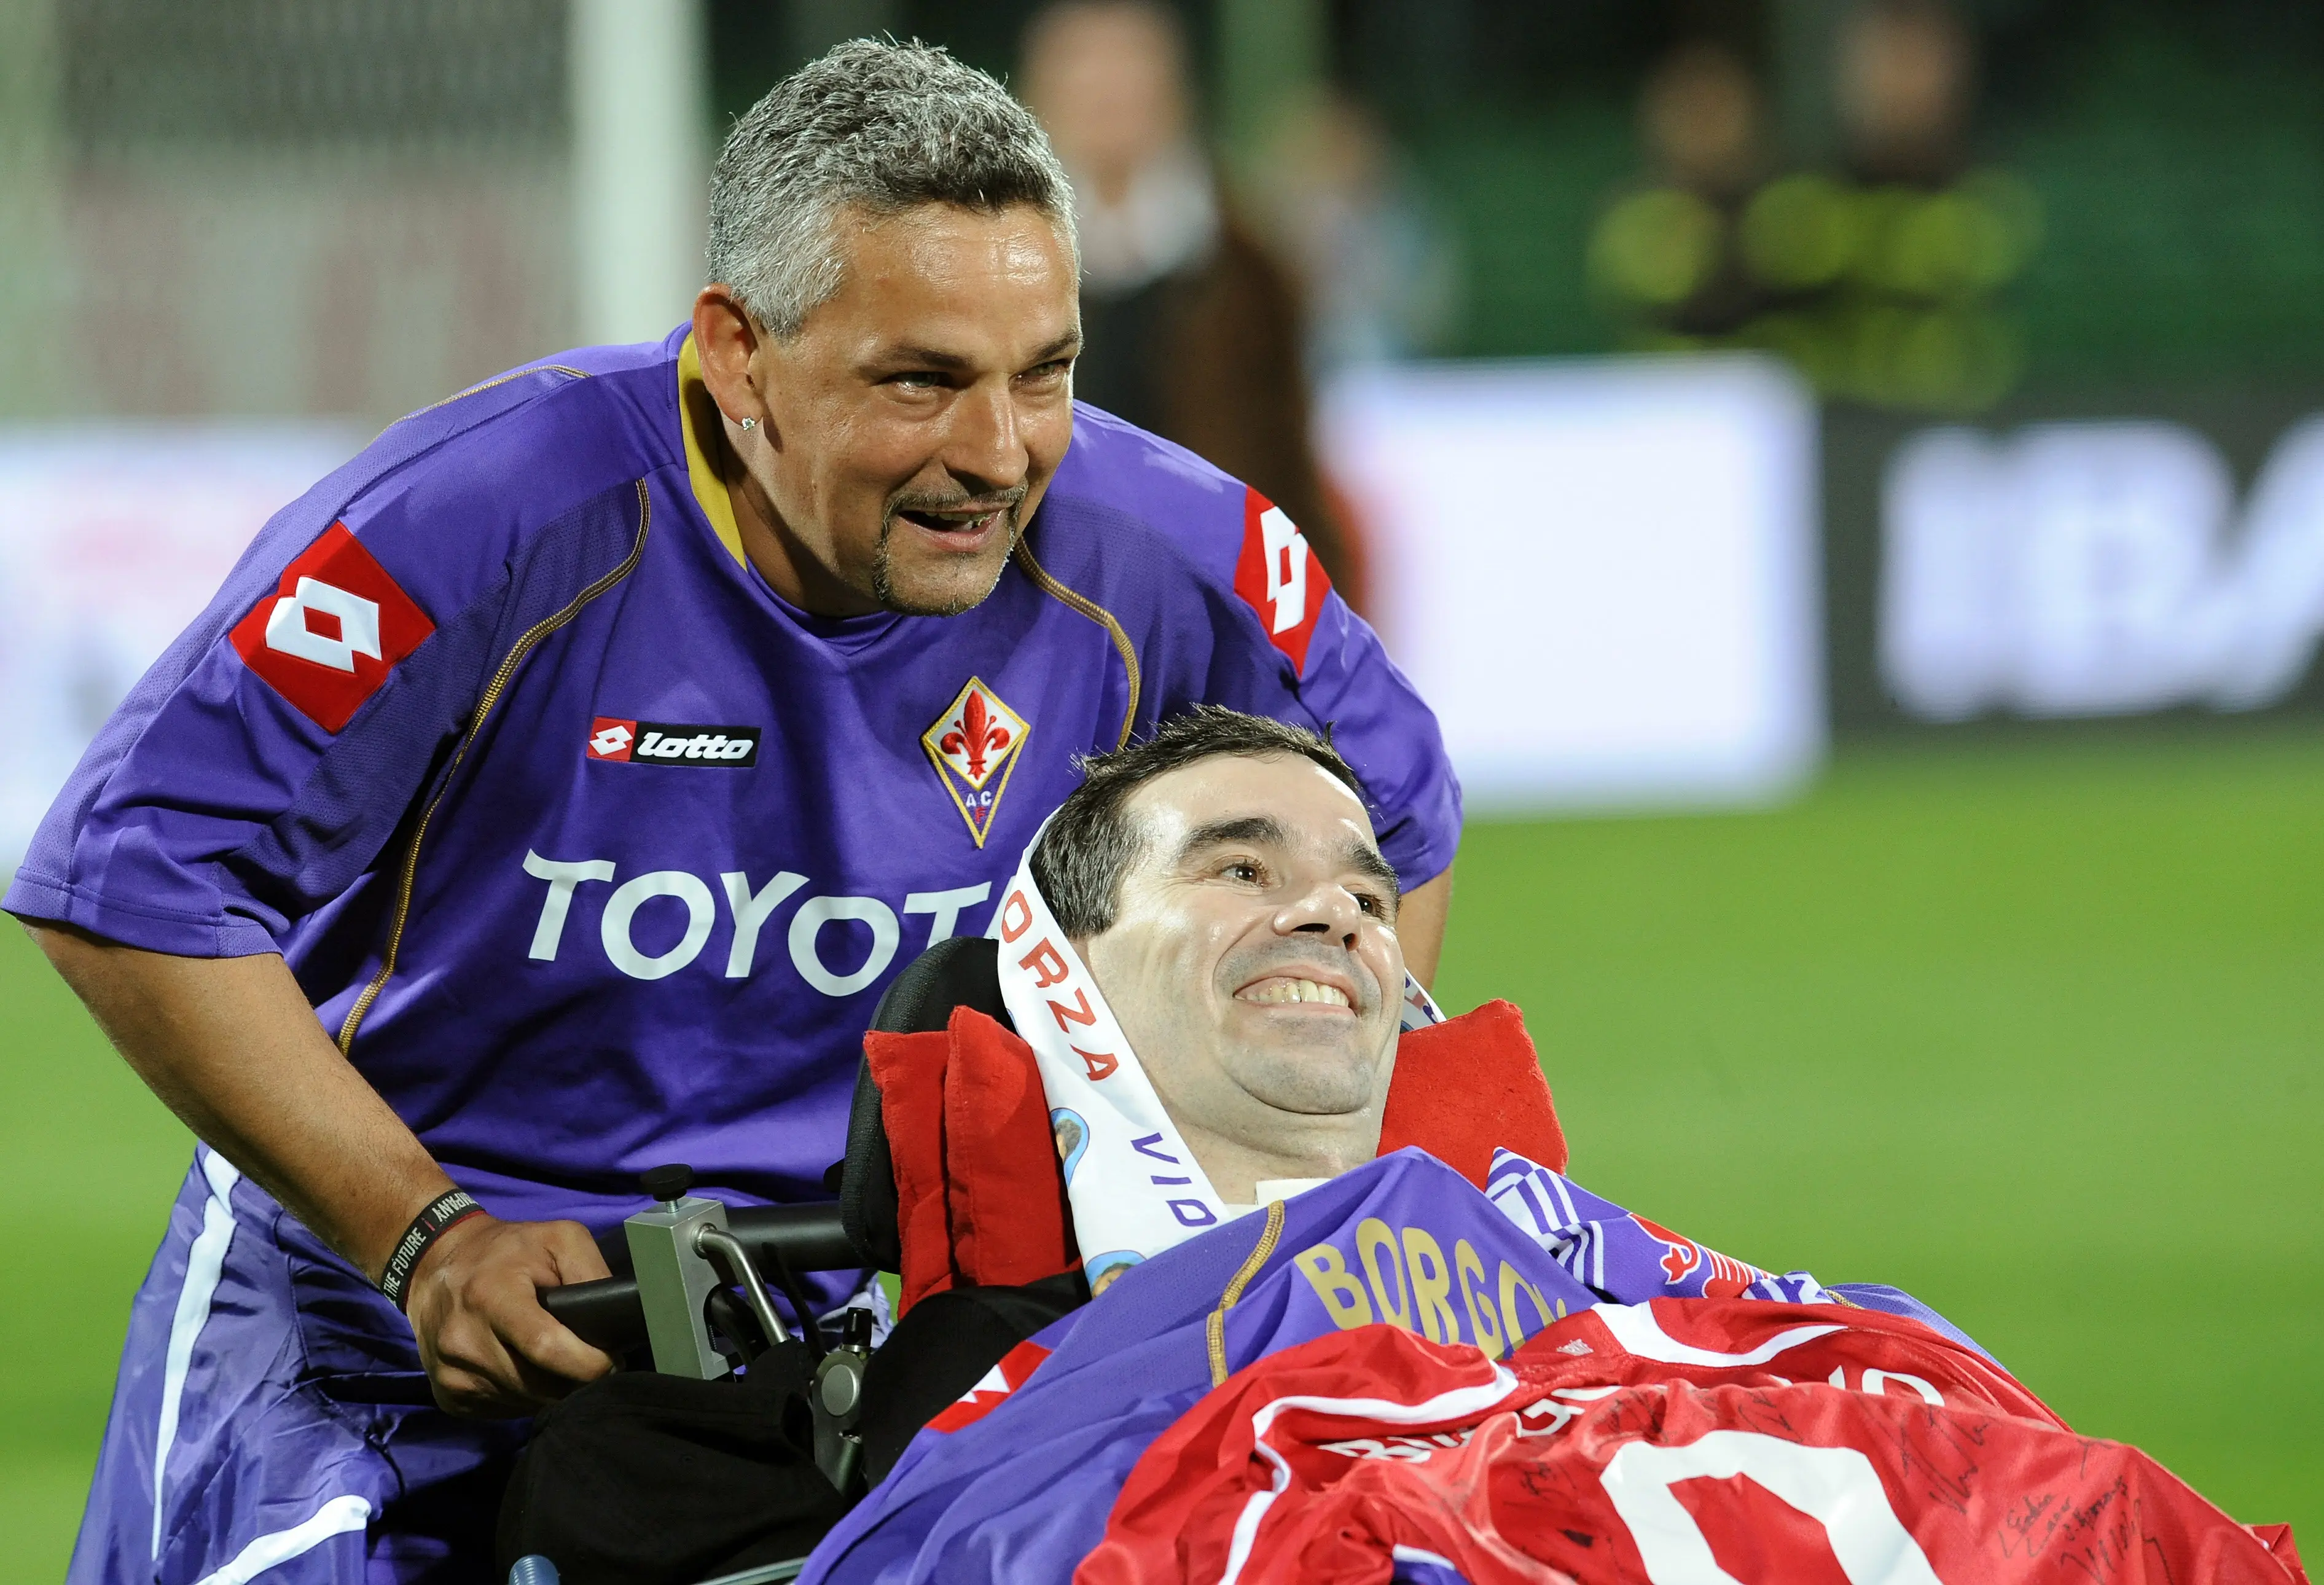 Roberto Baggio mendorong kursi roda mantan rekan setimnya di Fiorentina, Stefano Borgonovo, yang menderita Amyotrophic Lateral Sclerosis (ALS) pada 8 Oktober 2008. (FILIPPO MONTEFORTE / AFP)